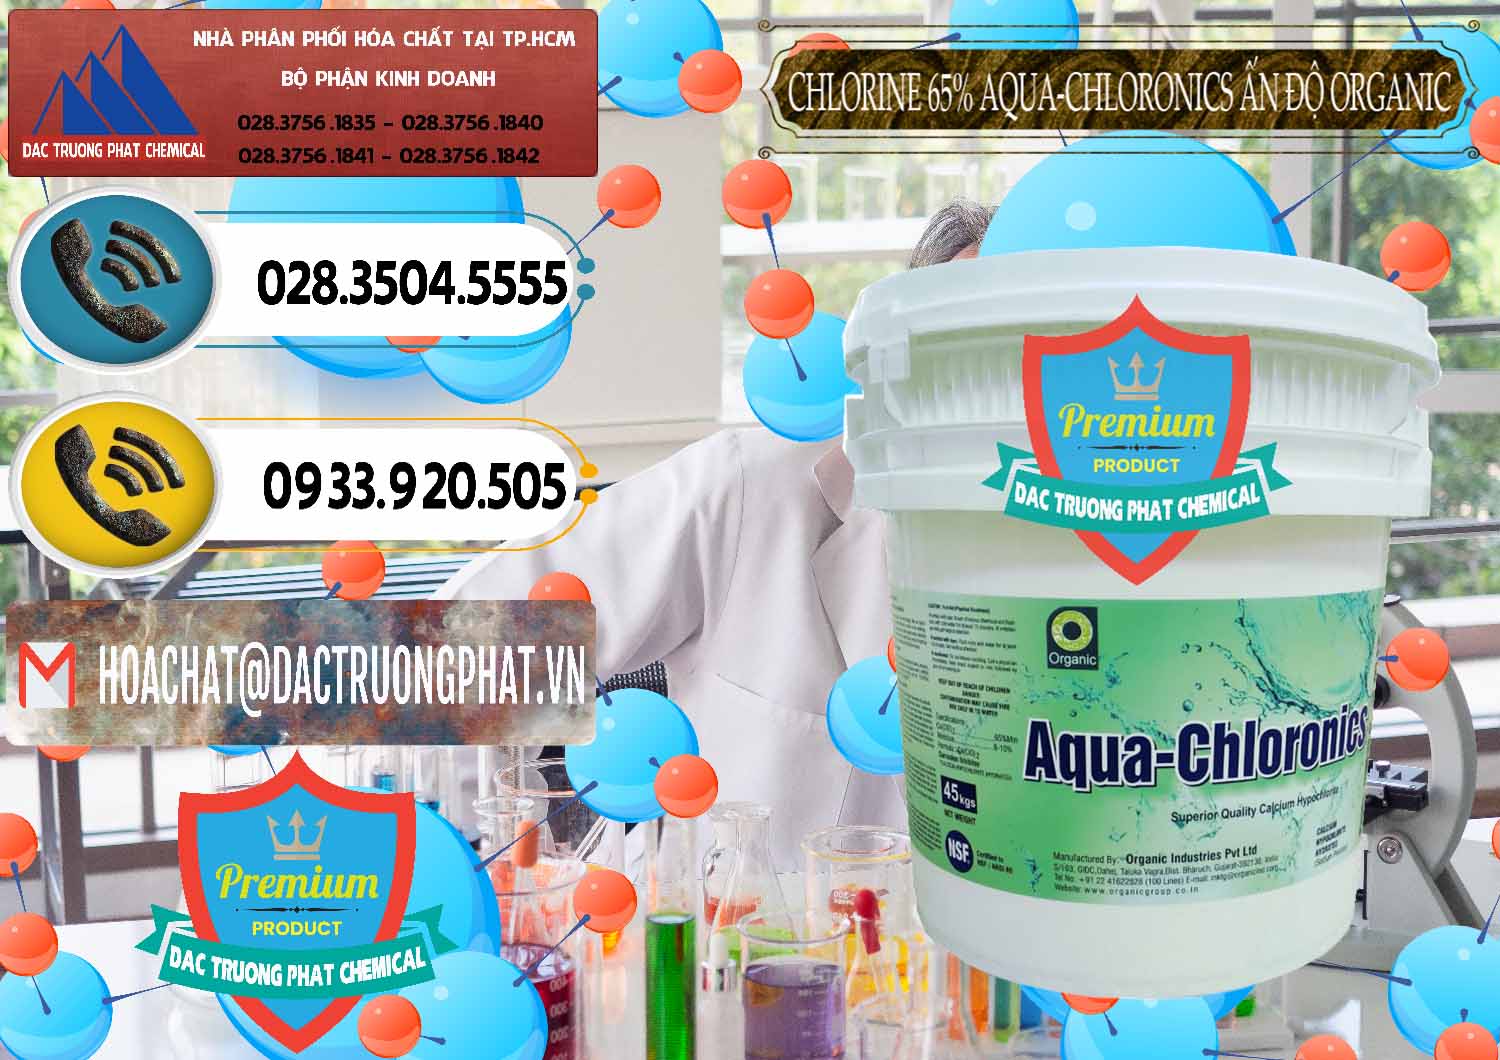 Đơn vị chuyên phân phối - bán Chlorine – Clorin 65% Aqua-Chloronics Ấn Độ Organic India - 0210 - Nơi phân phối & kinh doanh hóa chất tại TP.HCM - hoachatdetnhuom.vn